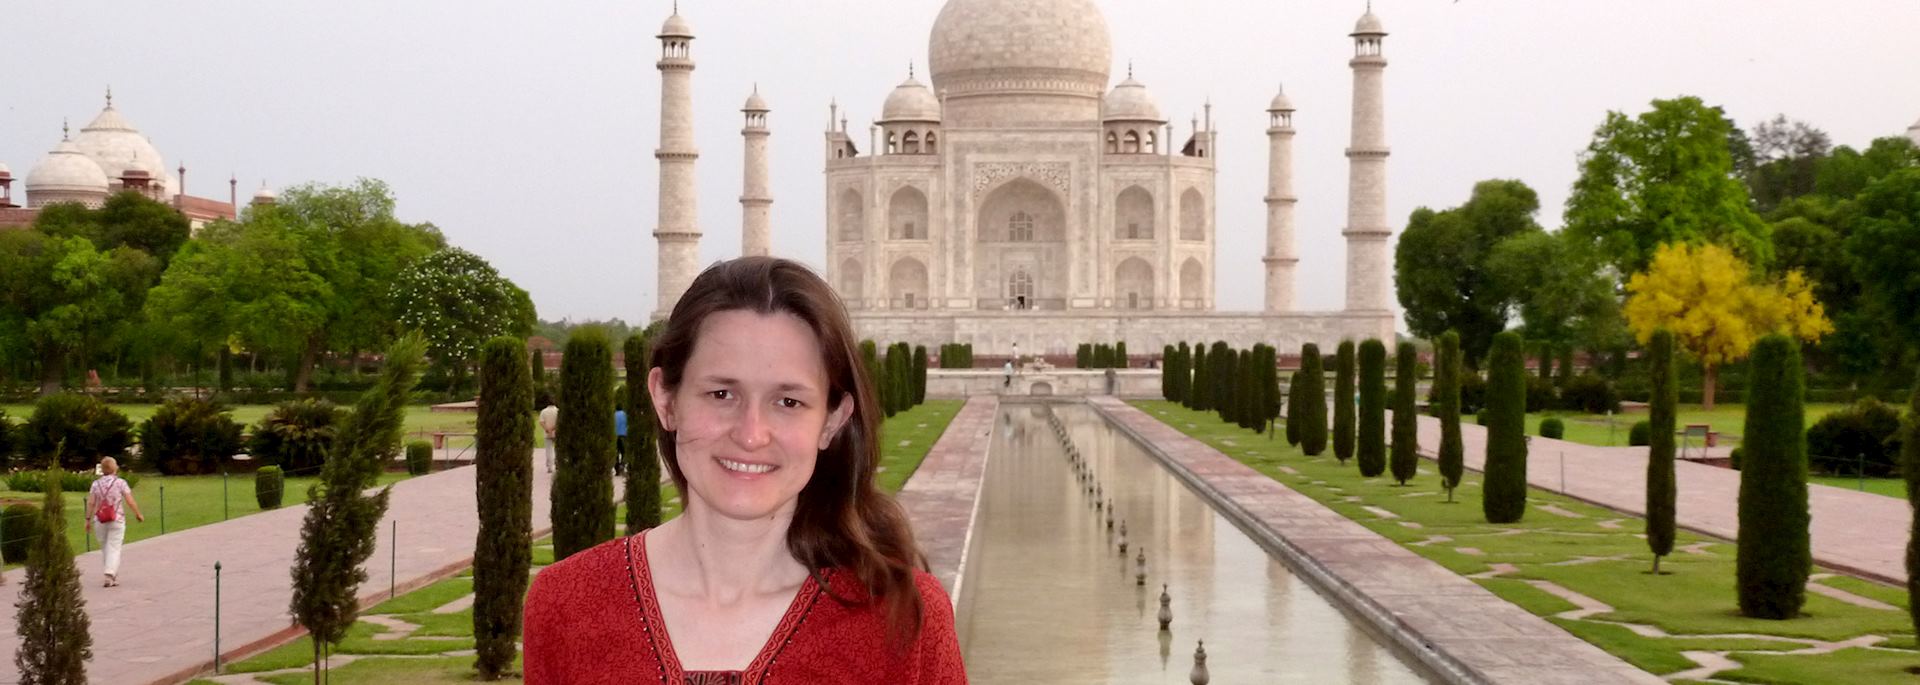 Alison at the Taj Mahal